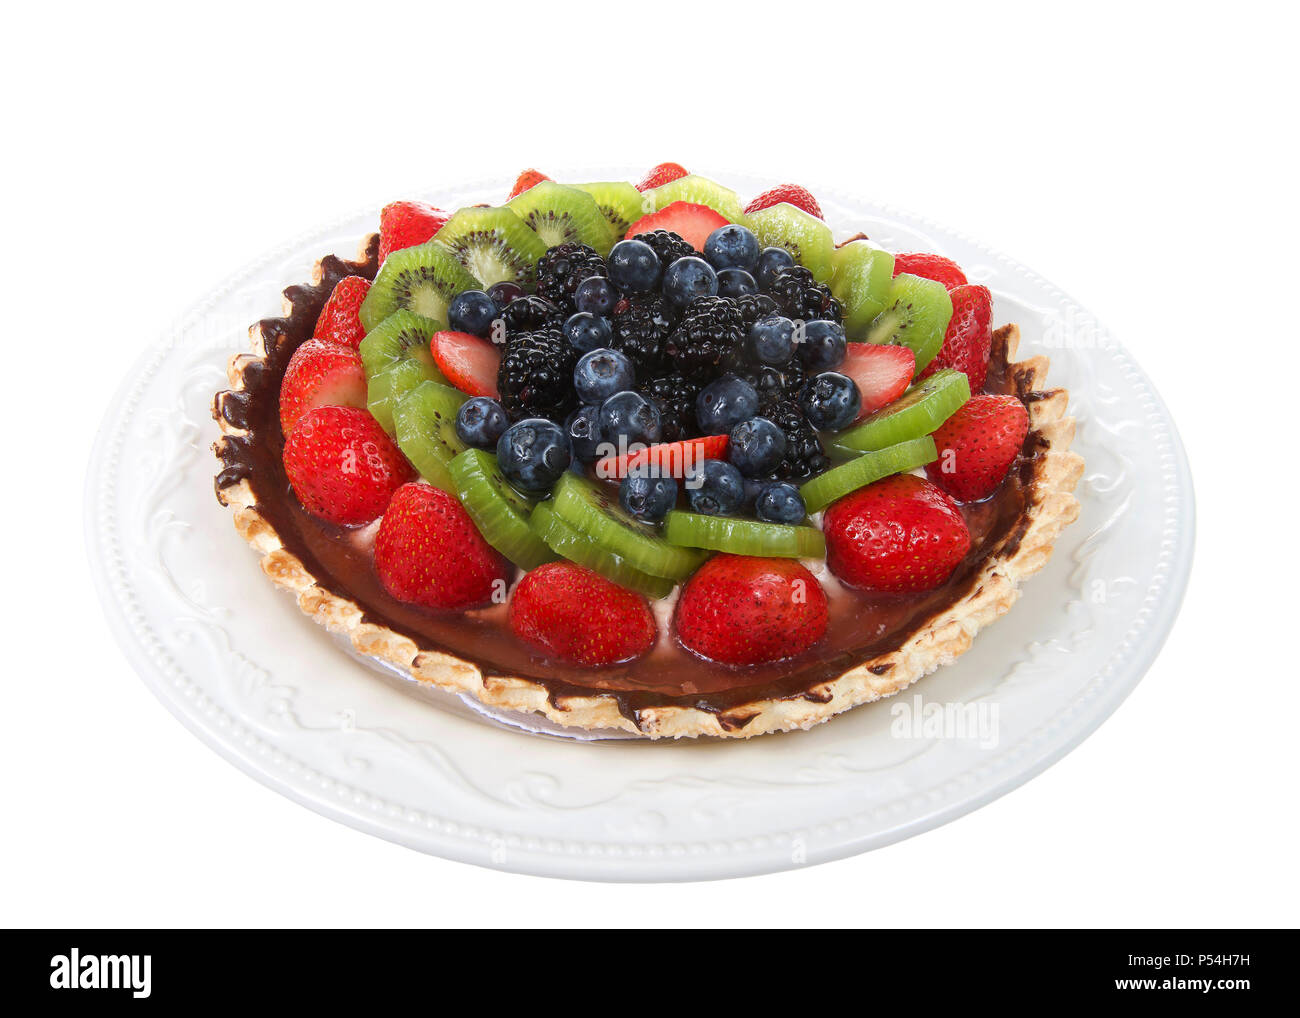 Frisches Obst Torte auf einem Gebäck Kruste überzogen mit Schokolade auf einem weißen Teller auf weißem Hintergrund. Fokus für tiefere Tiefenschärfe gestapelt. Stockfoto